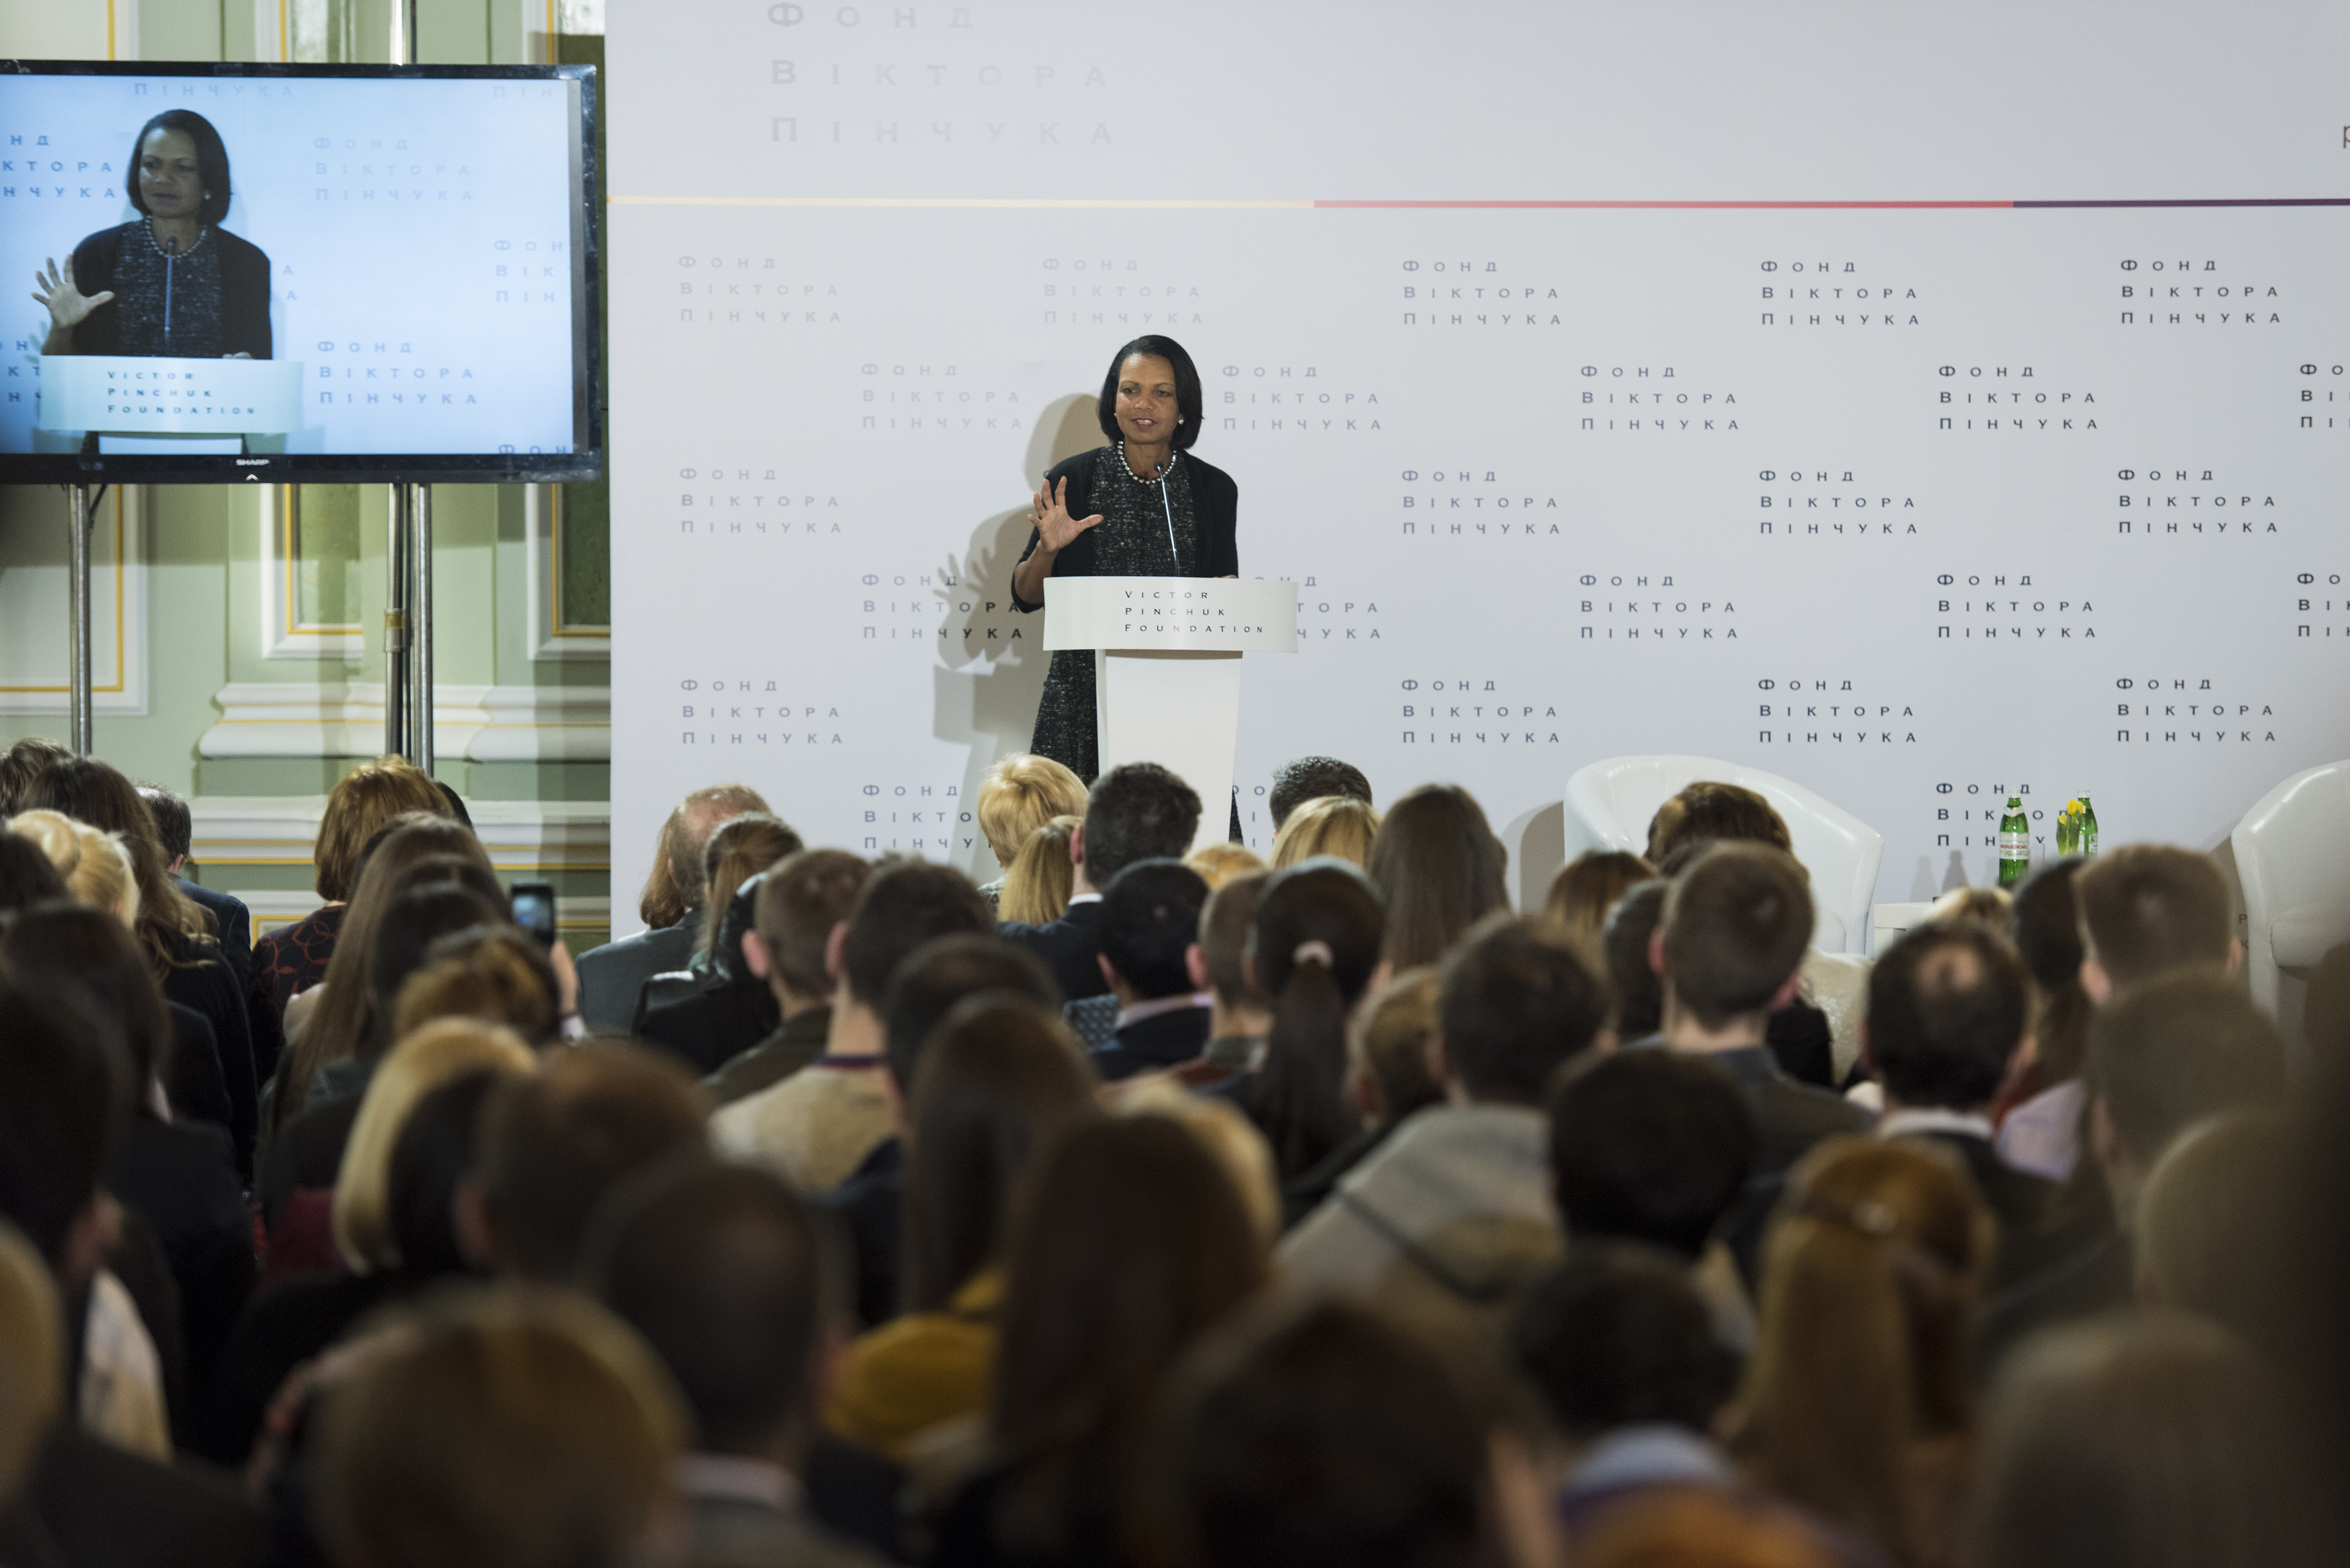 Public lecture by Condoleezza Rice